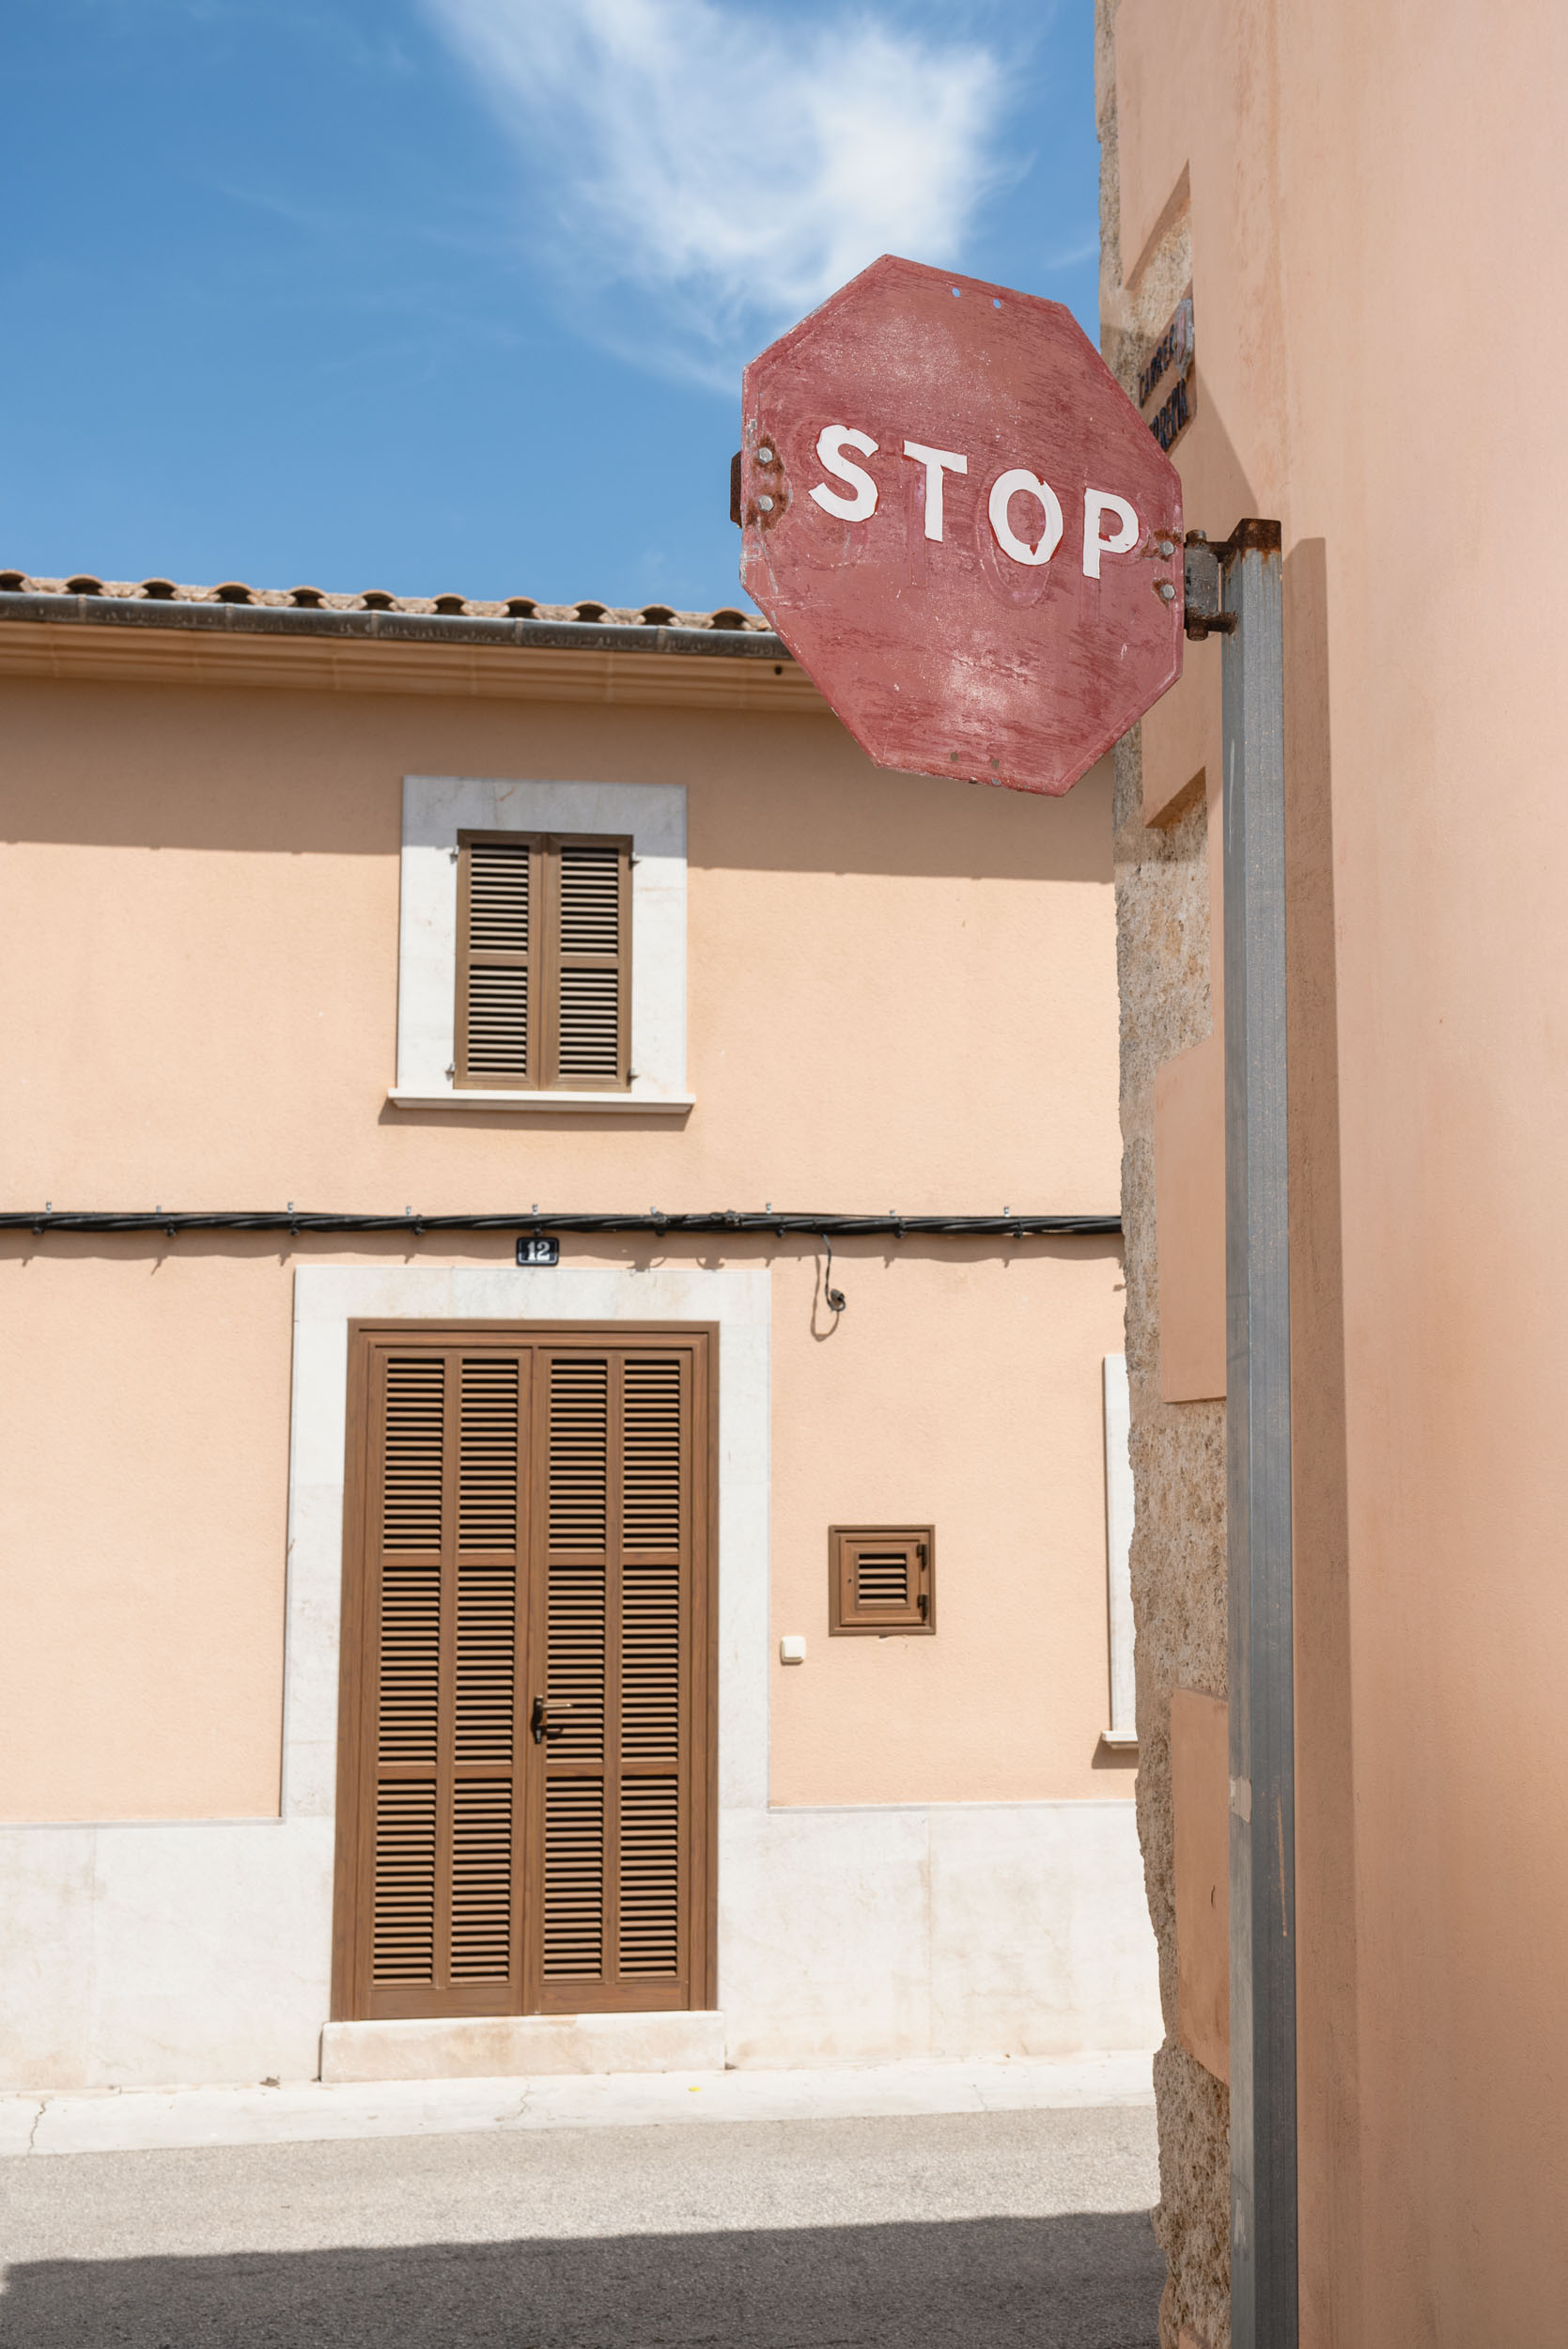 Stop sign in Sineu, Spain